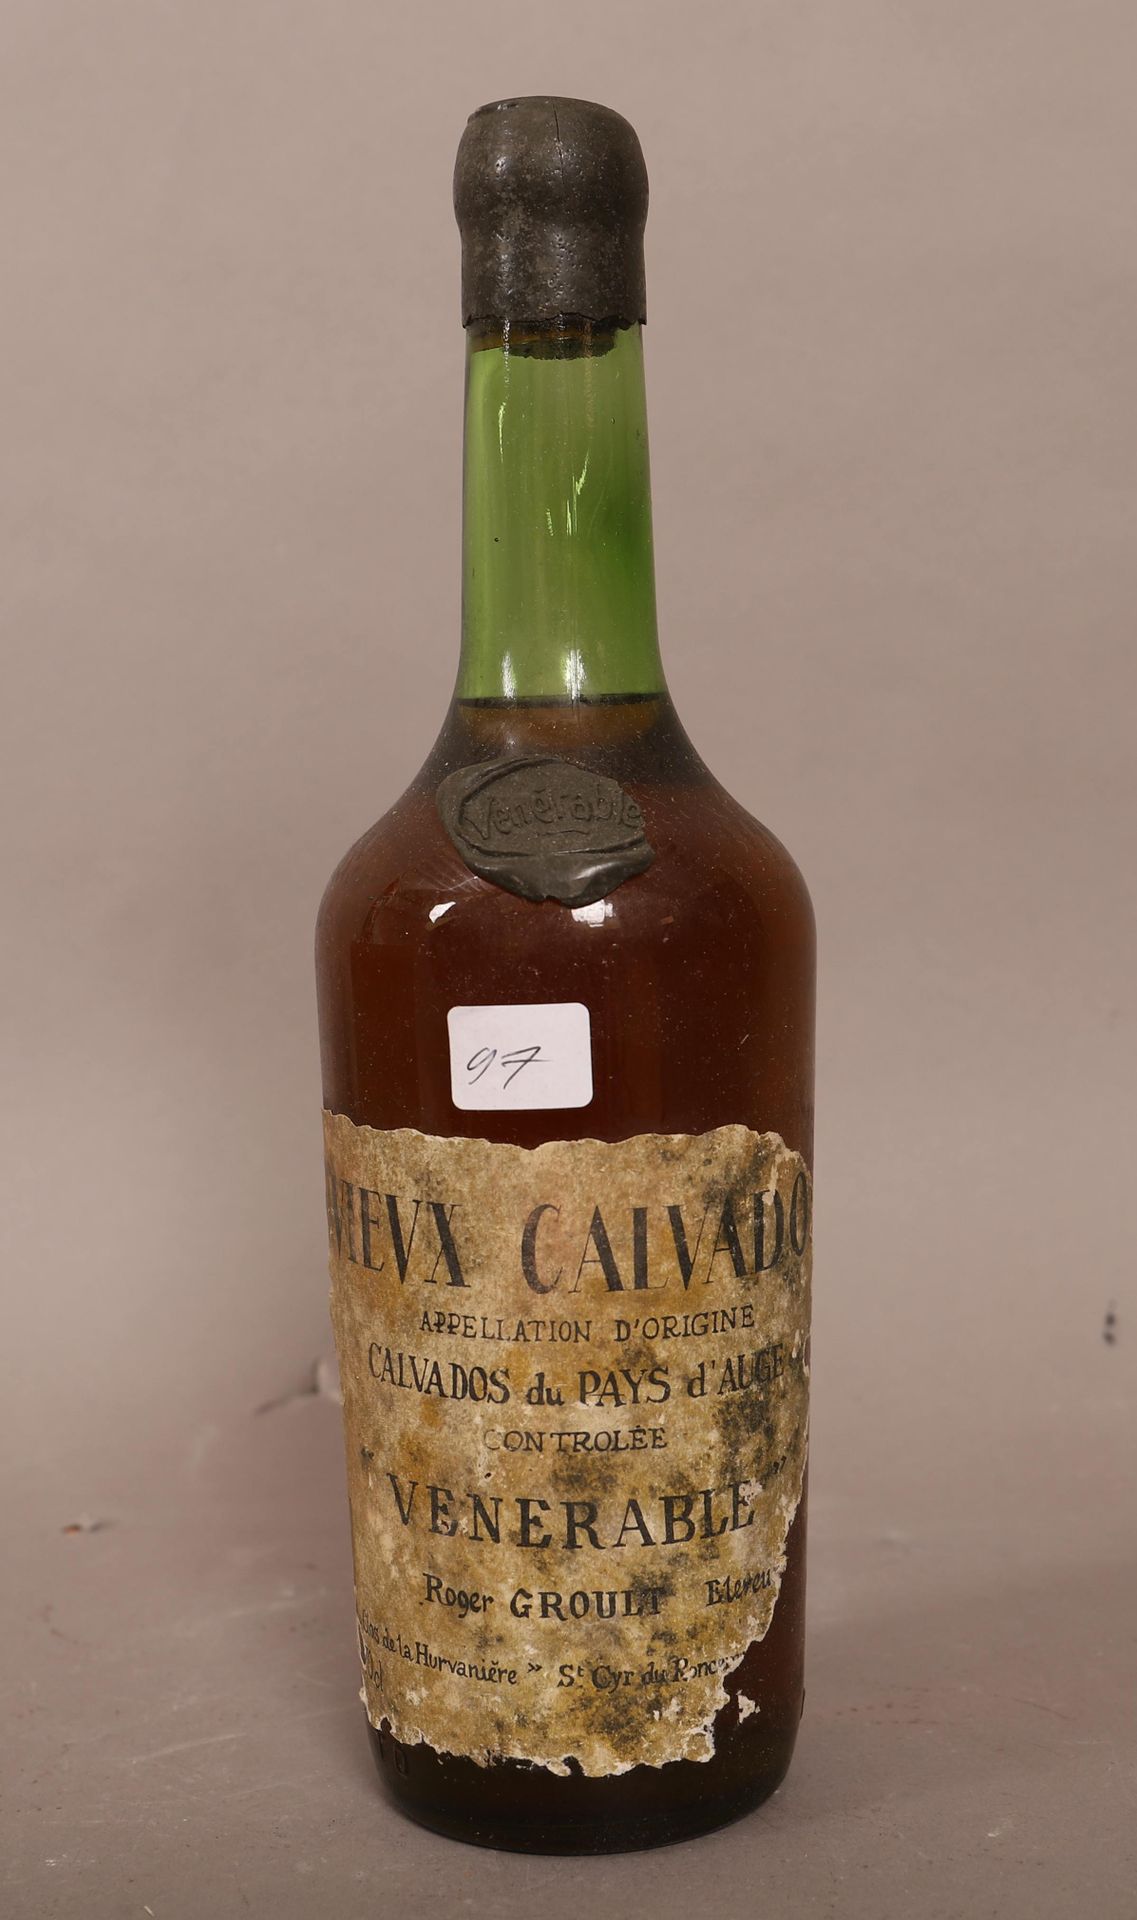 Null Vecchio Calvados (x1)

Venerabile

Pays d'Auge

0,70L